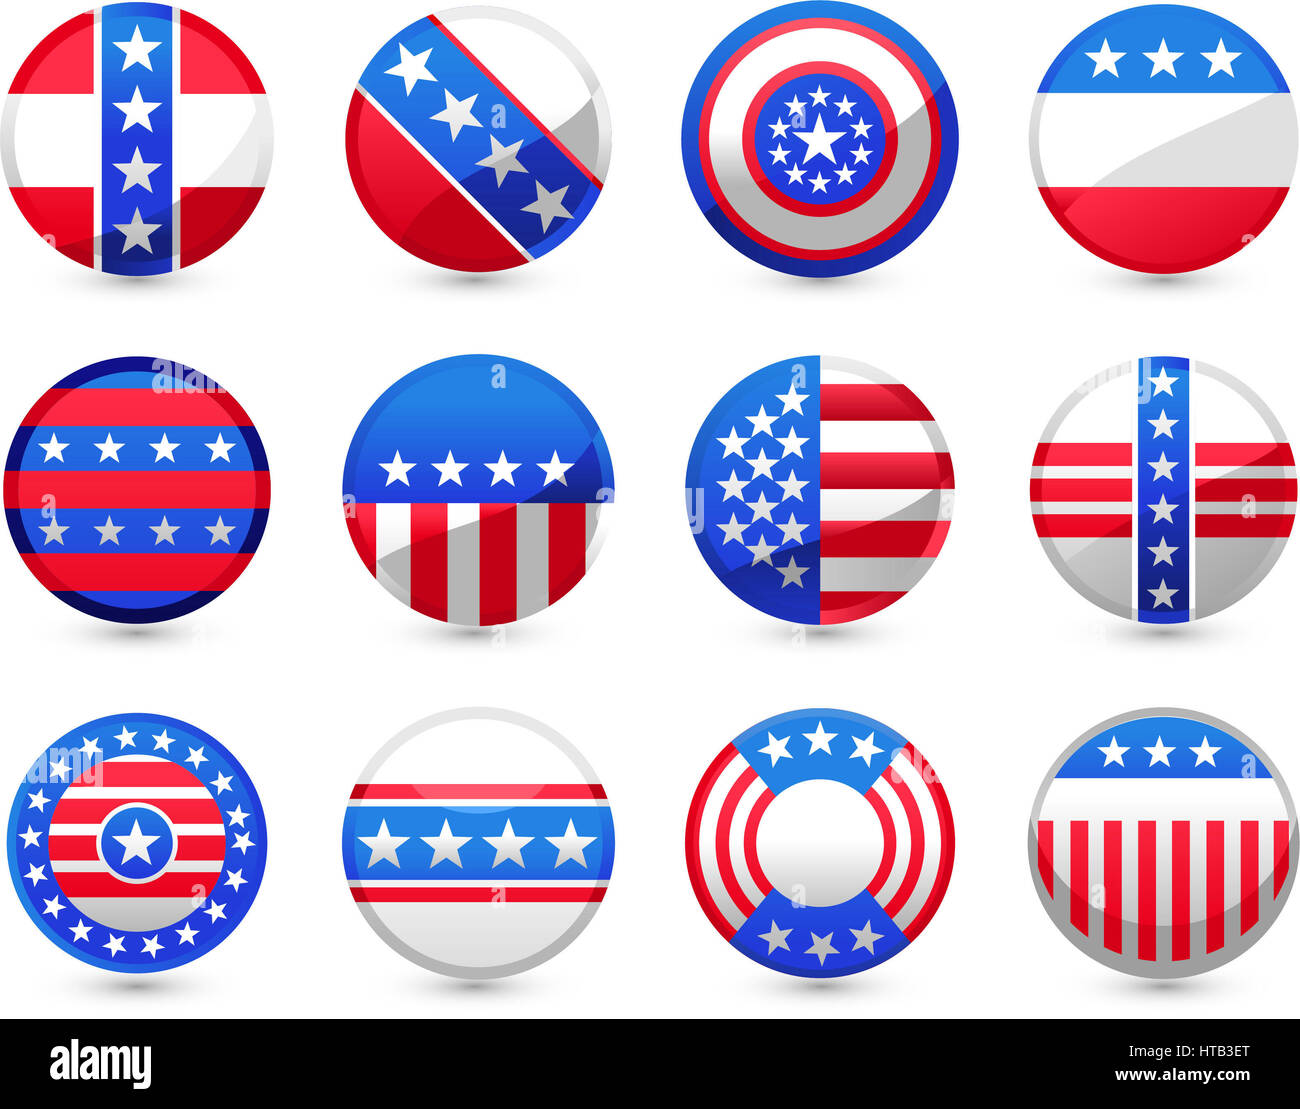 12 Boutons USA dans différents motifs américains vector illustration, en rouge et bleu, avec des étoiles blanches et drapeau américain. Banque D'Images